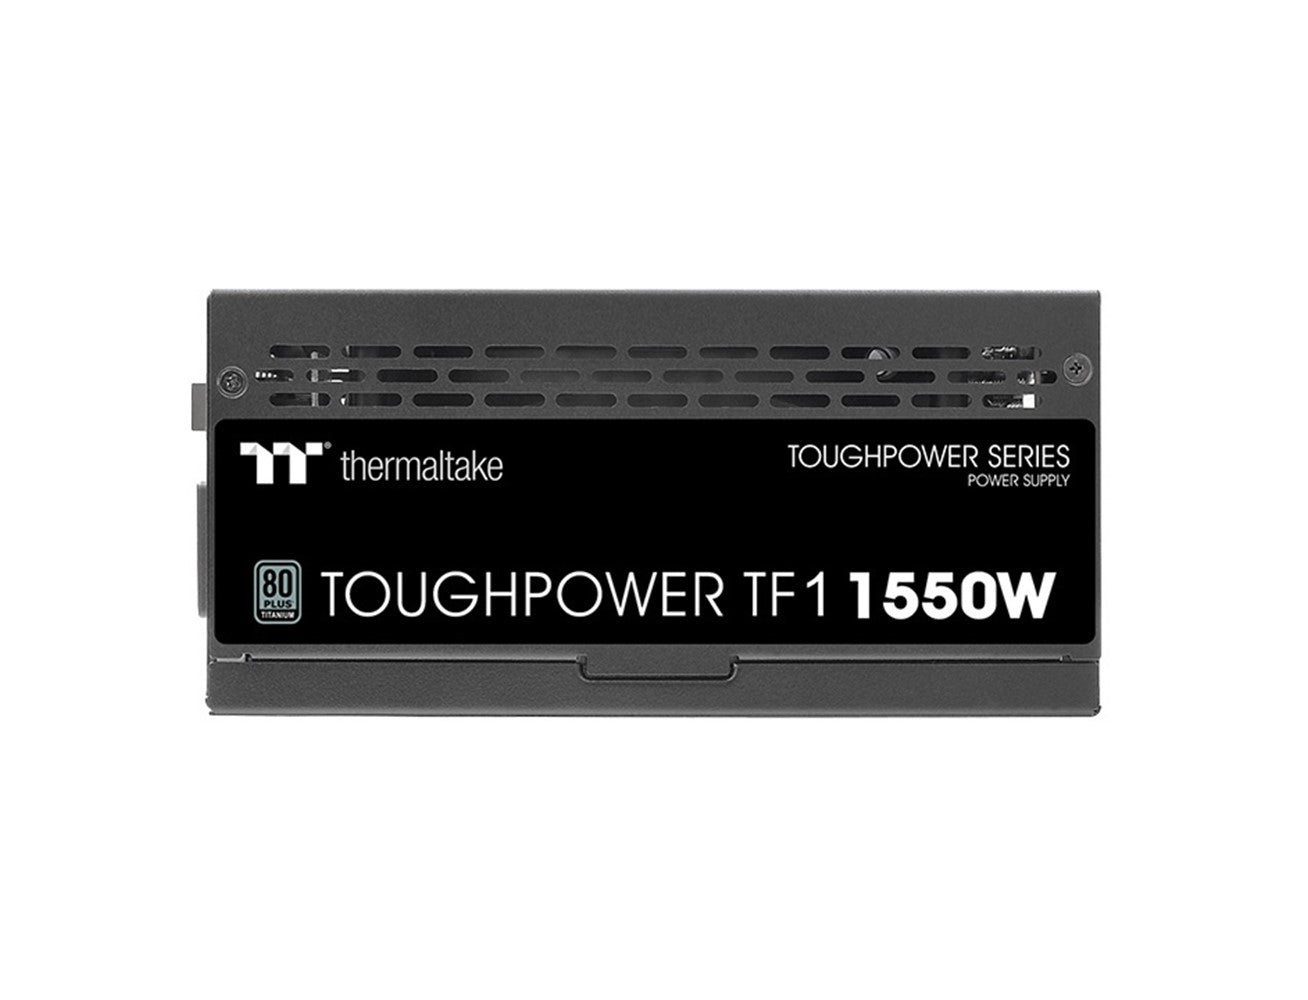 Thermaltake Toughpower TF1, 1550W, 80 PLUS Titanium, Fully Modular Power Supply